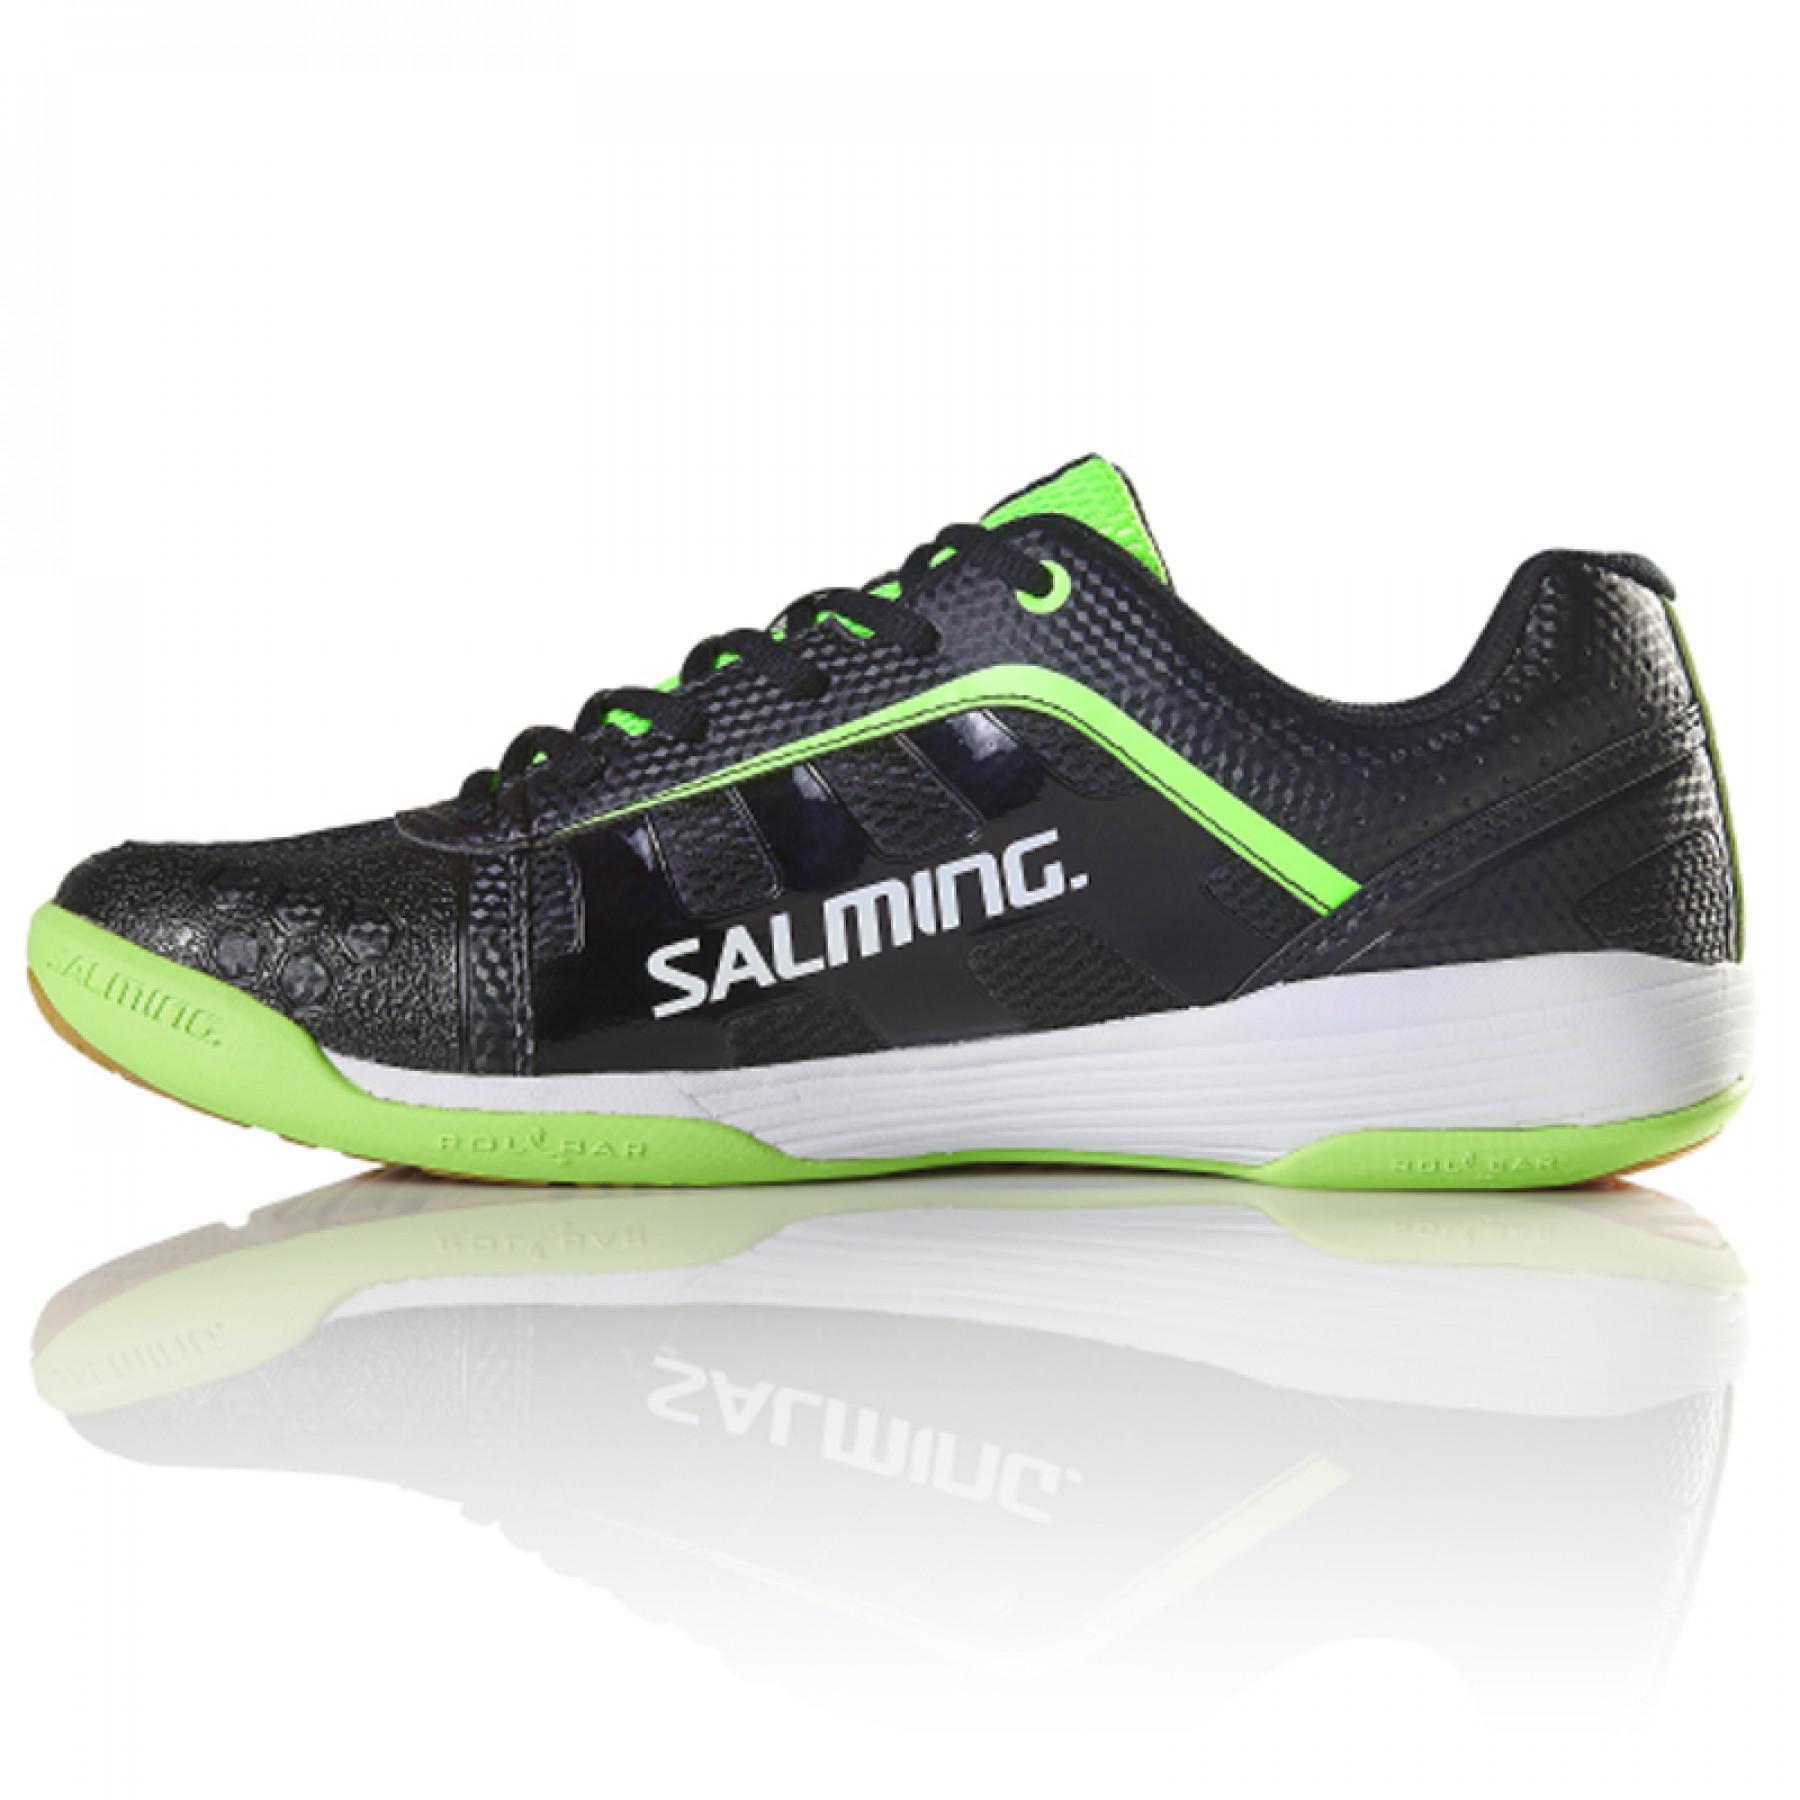 Schuhe Salming Adder Men noir/vert